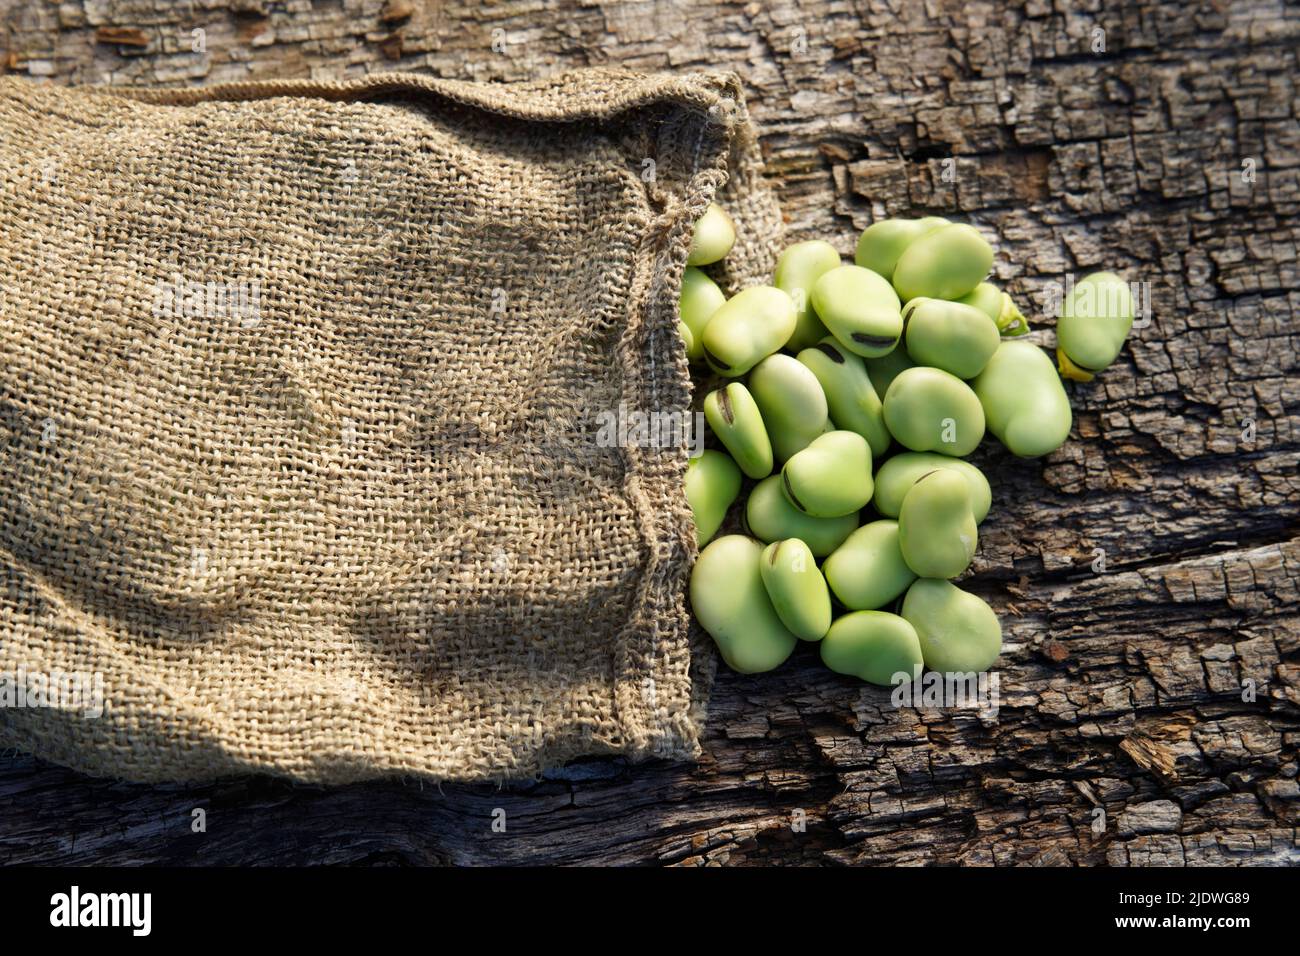 Harvested fava beans (Vicia faba) in a vegetable garden. Stock Photo